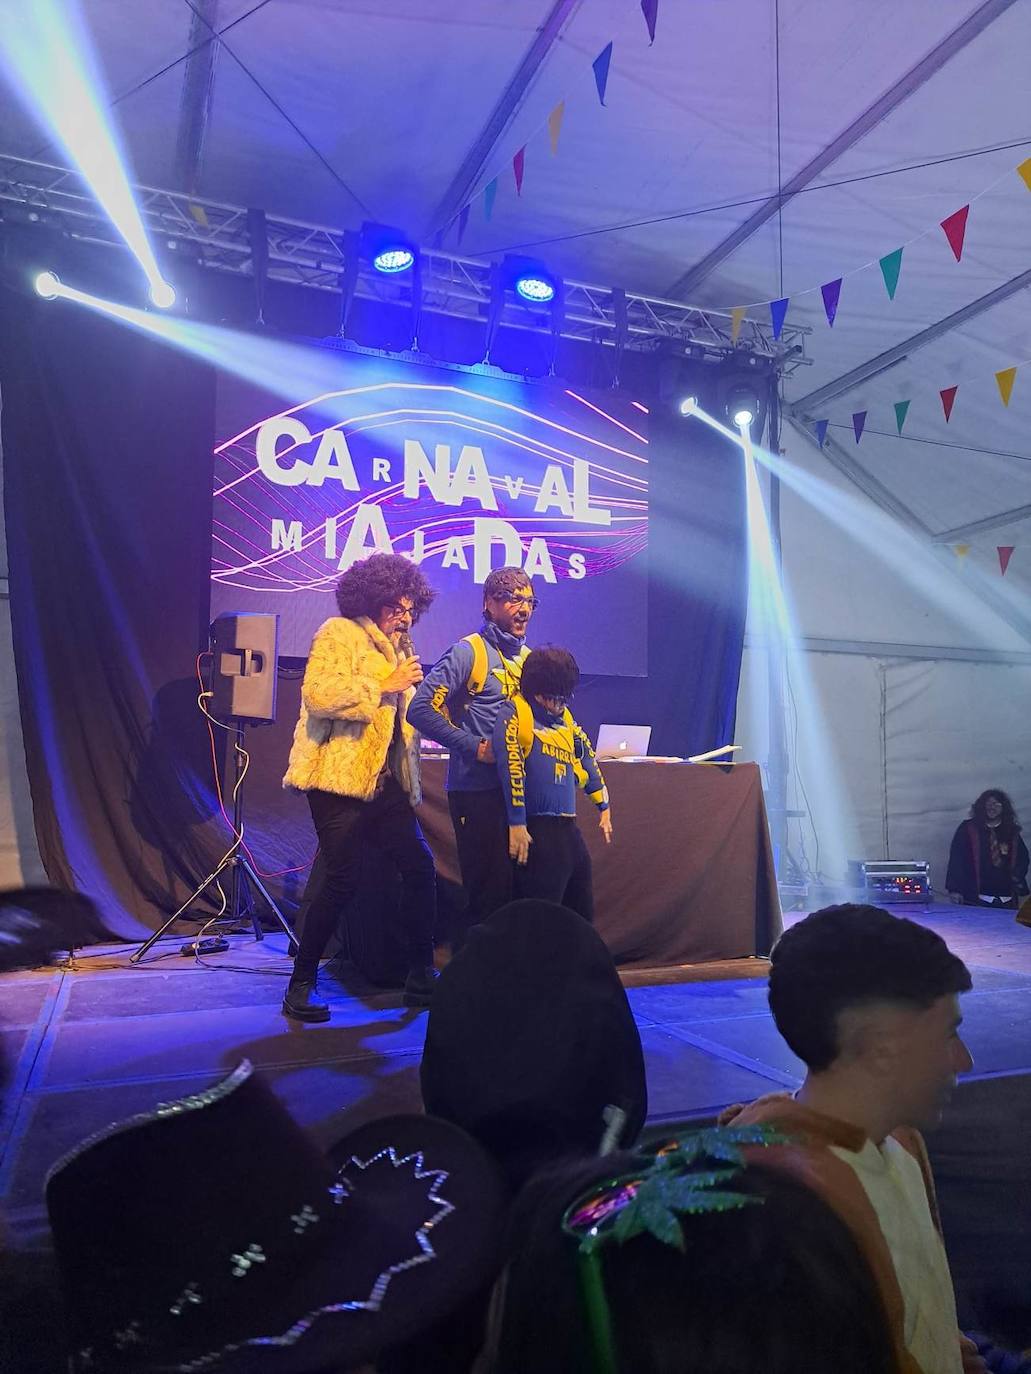 Miajadas celebró su Concurso de disfraces del Carnaval 2023, en el que hubo mucho baile y mucho' cachondeo'. El grupo 'Pista de choque' fue el ganador del primer premio, dotado de 300 euros, mientras que 'DJ's' consiguieron el segundo premio con 200 euros, y 'Desplieque Lolil' se hizo con los 150 euros del tercer premio. 